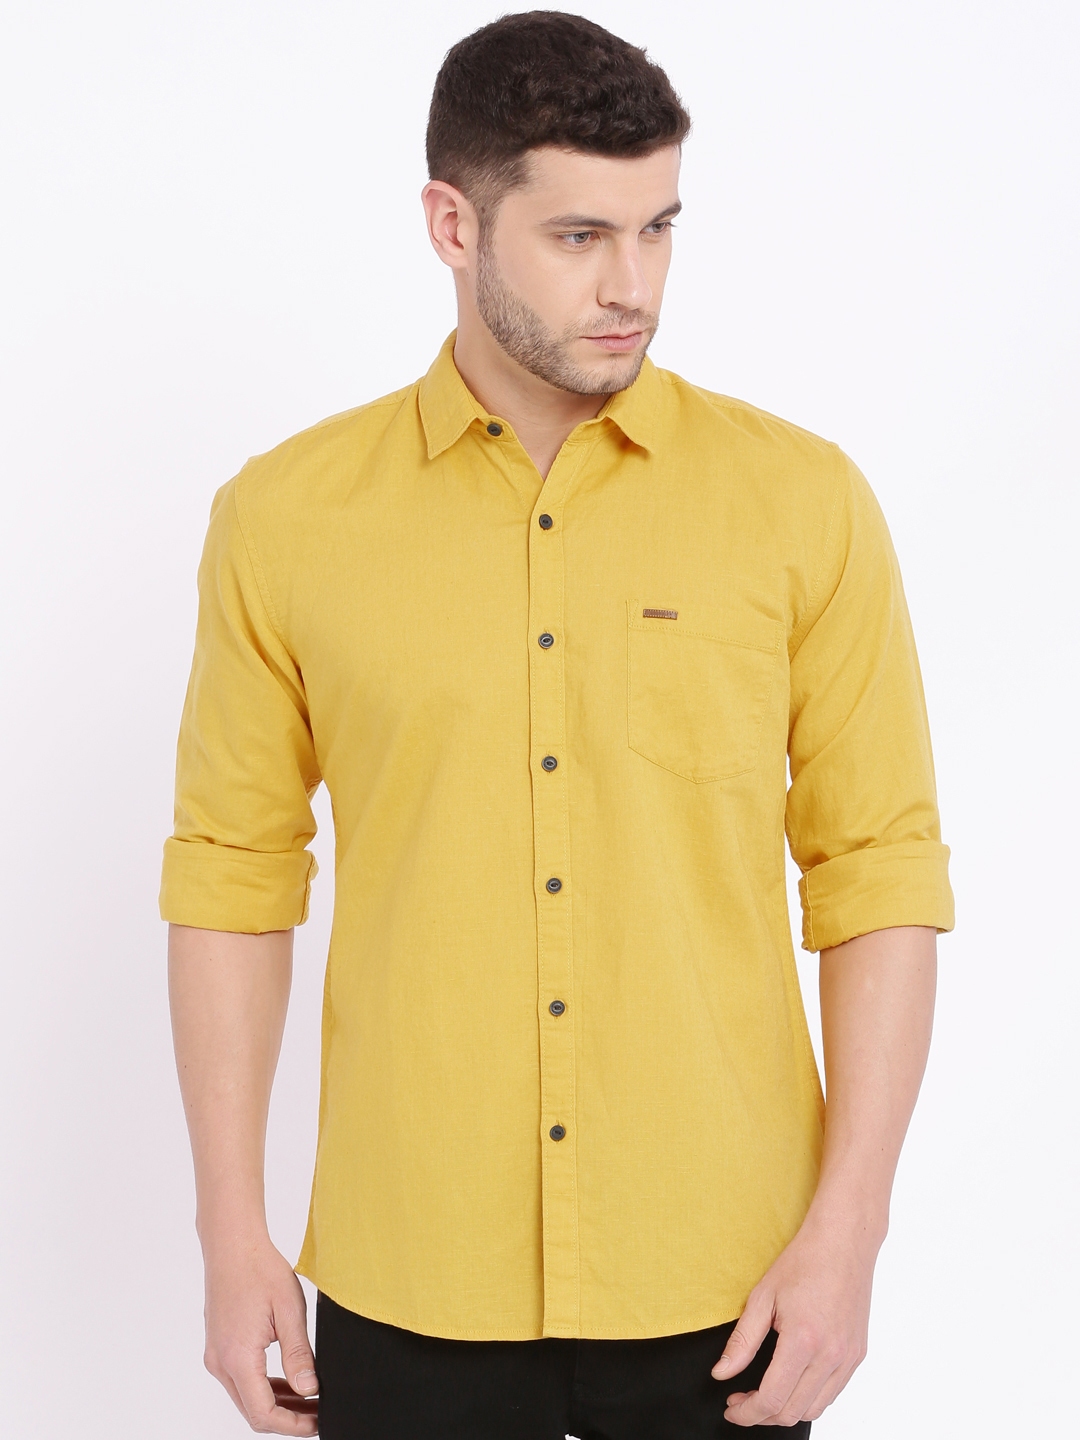 wrangler yellow shirt